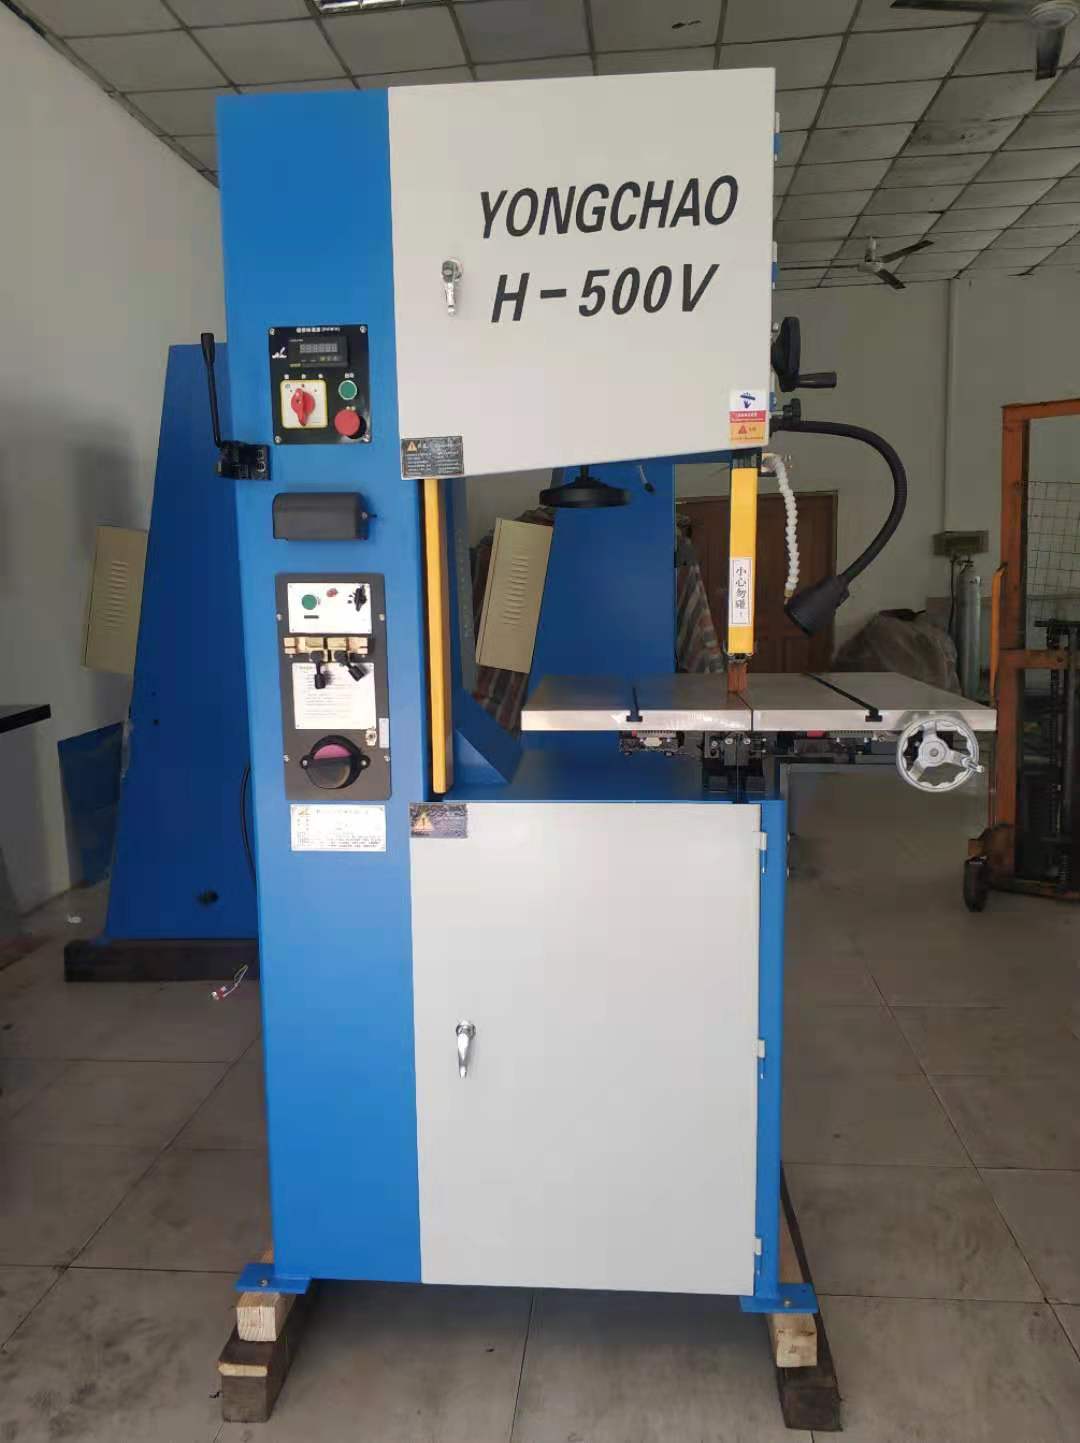 立式带锯床 yongchao H-500V 铝合金轮毂锯切机6